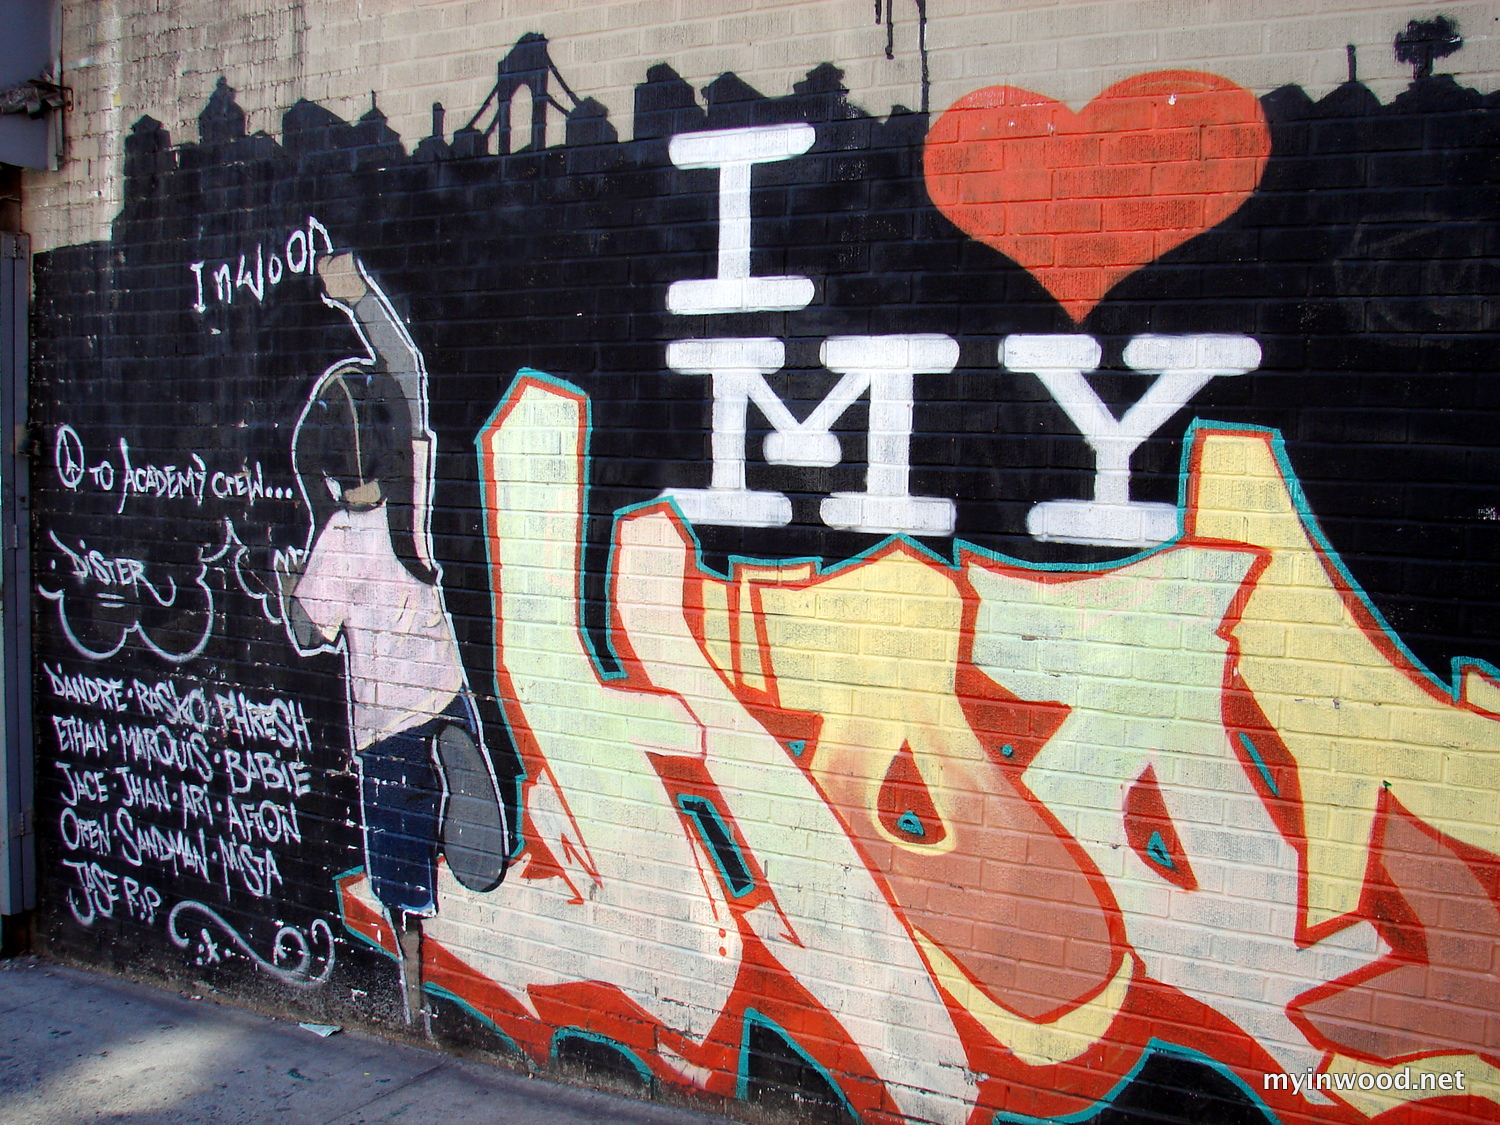 Inwood, NYC Graffiti